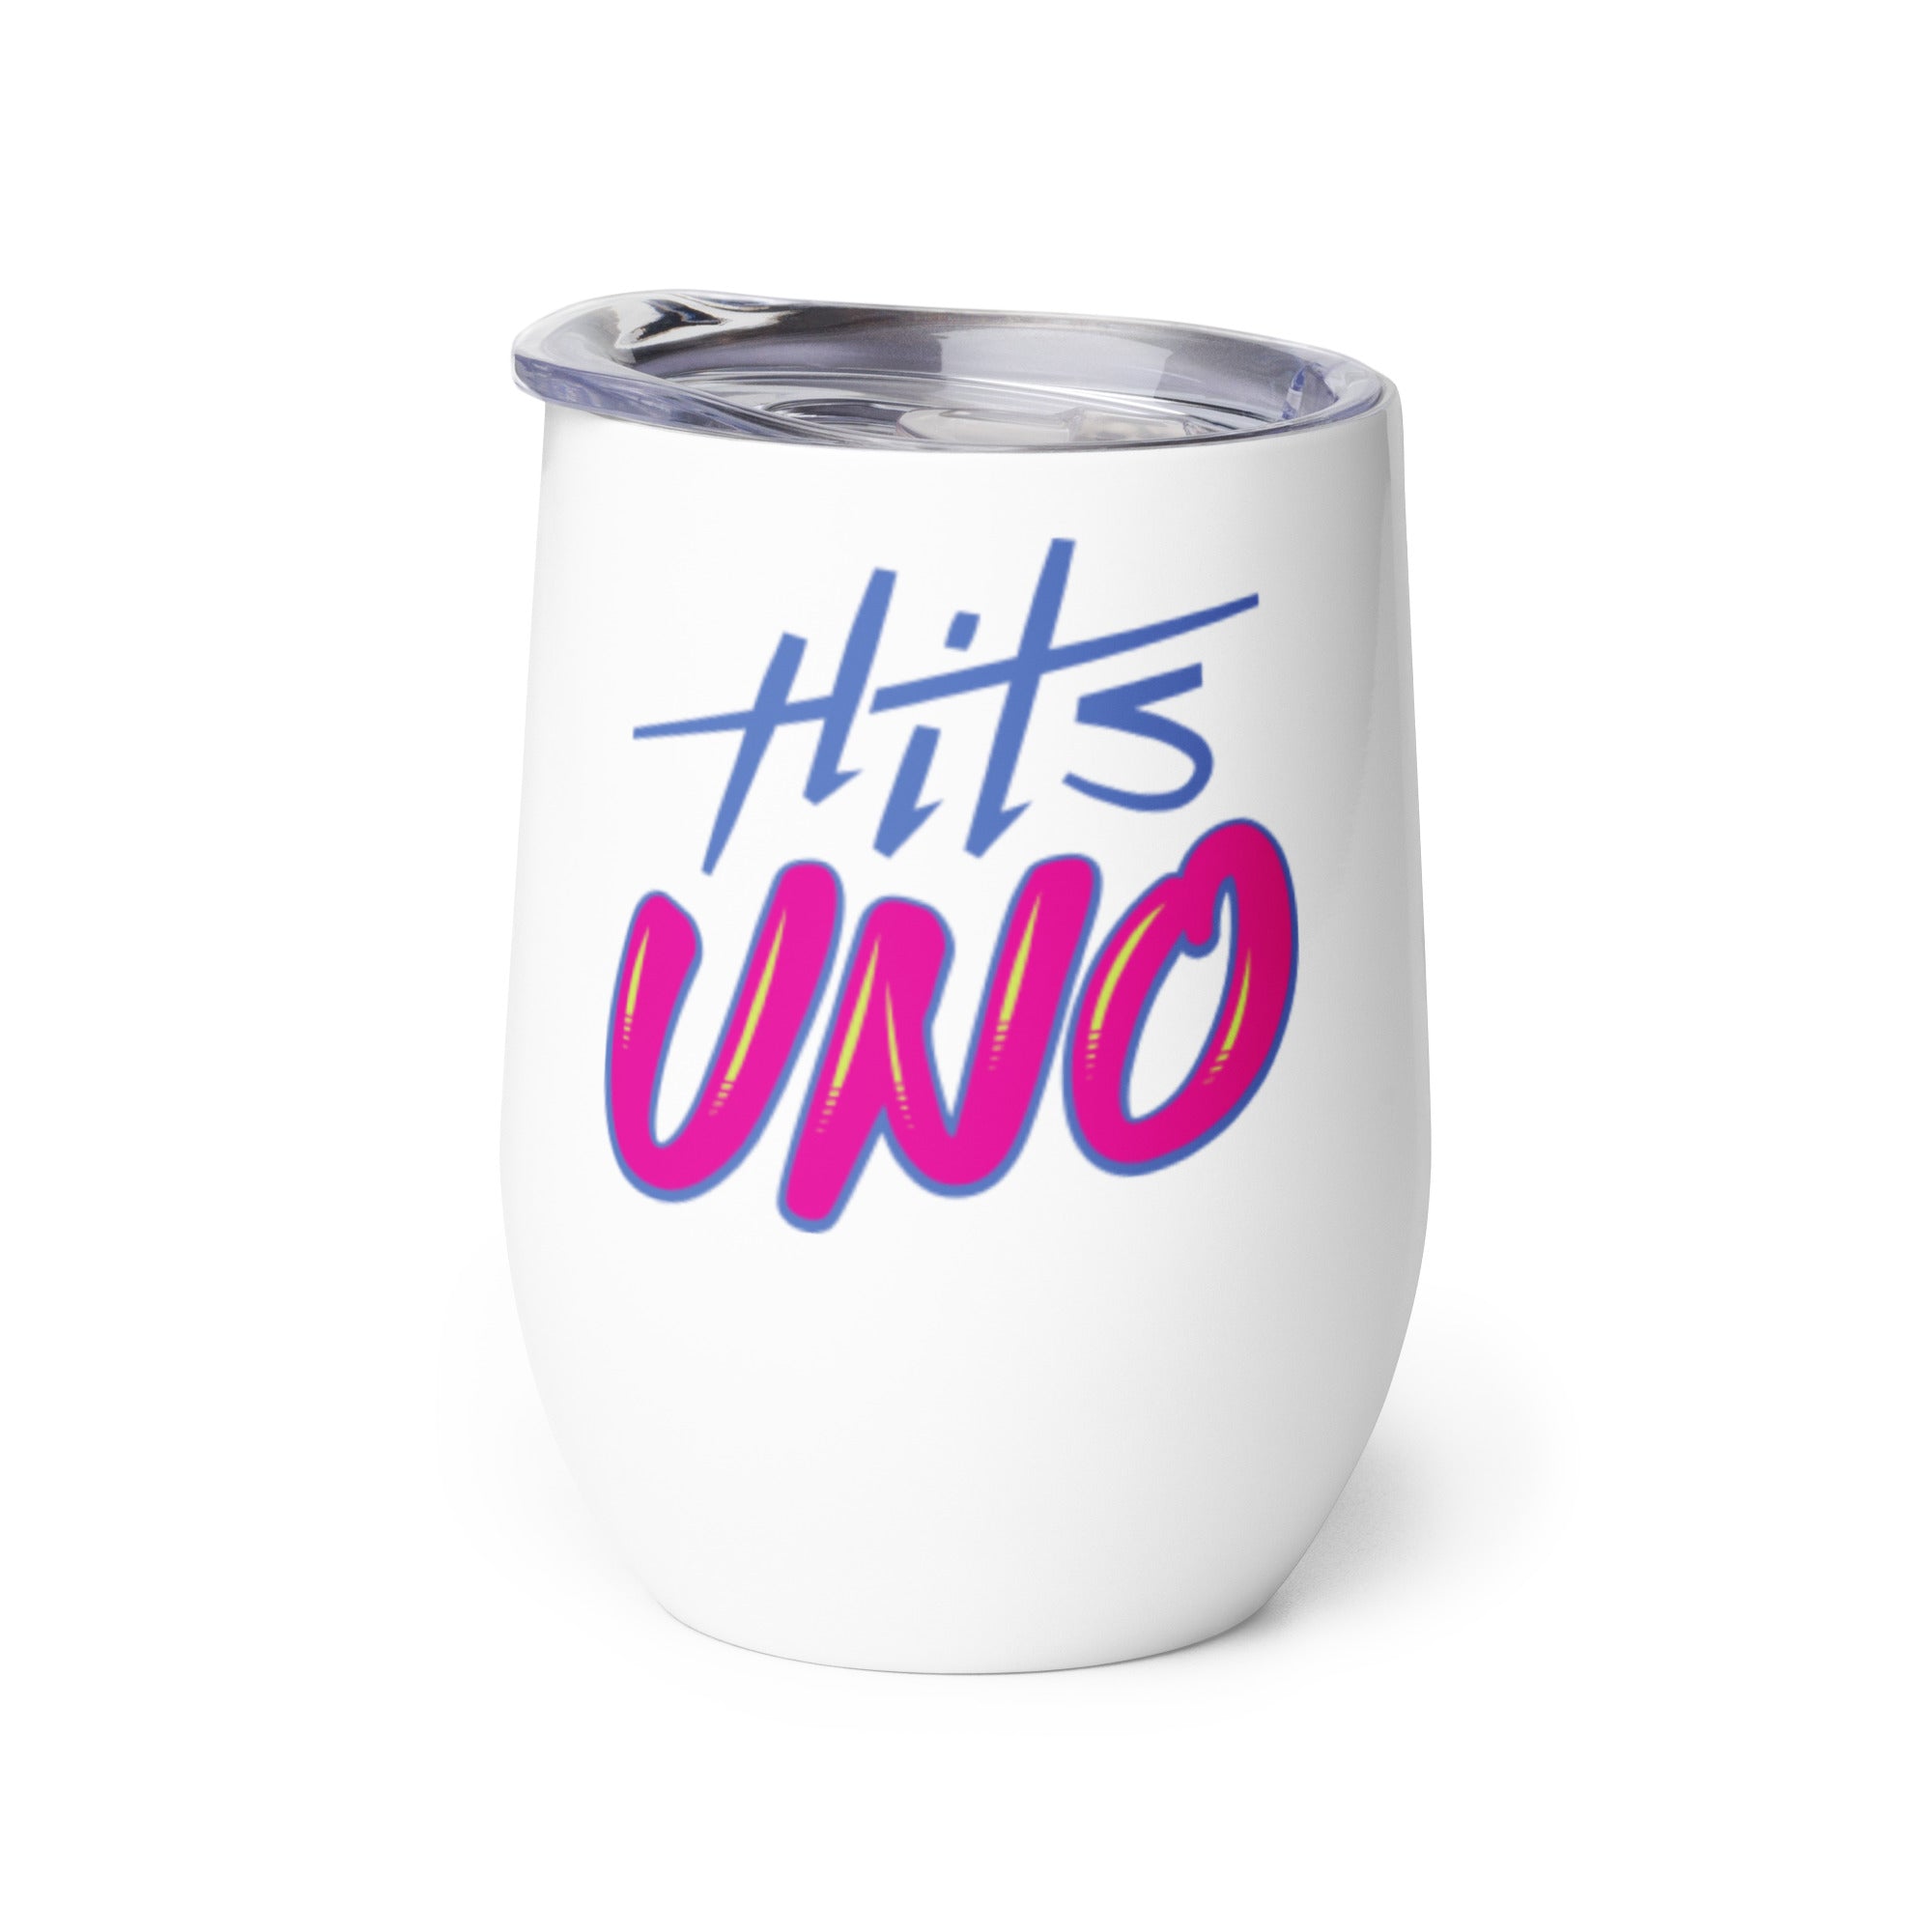 Hits Uno: Wine Tumbler